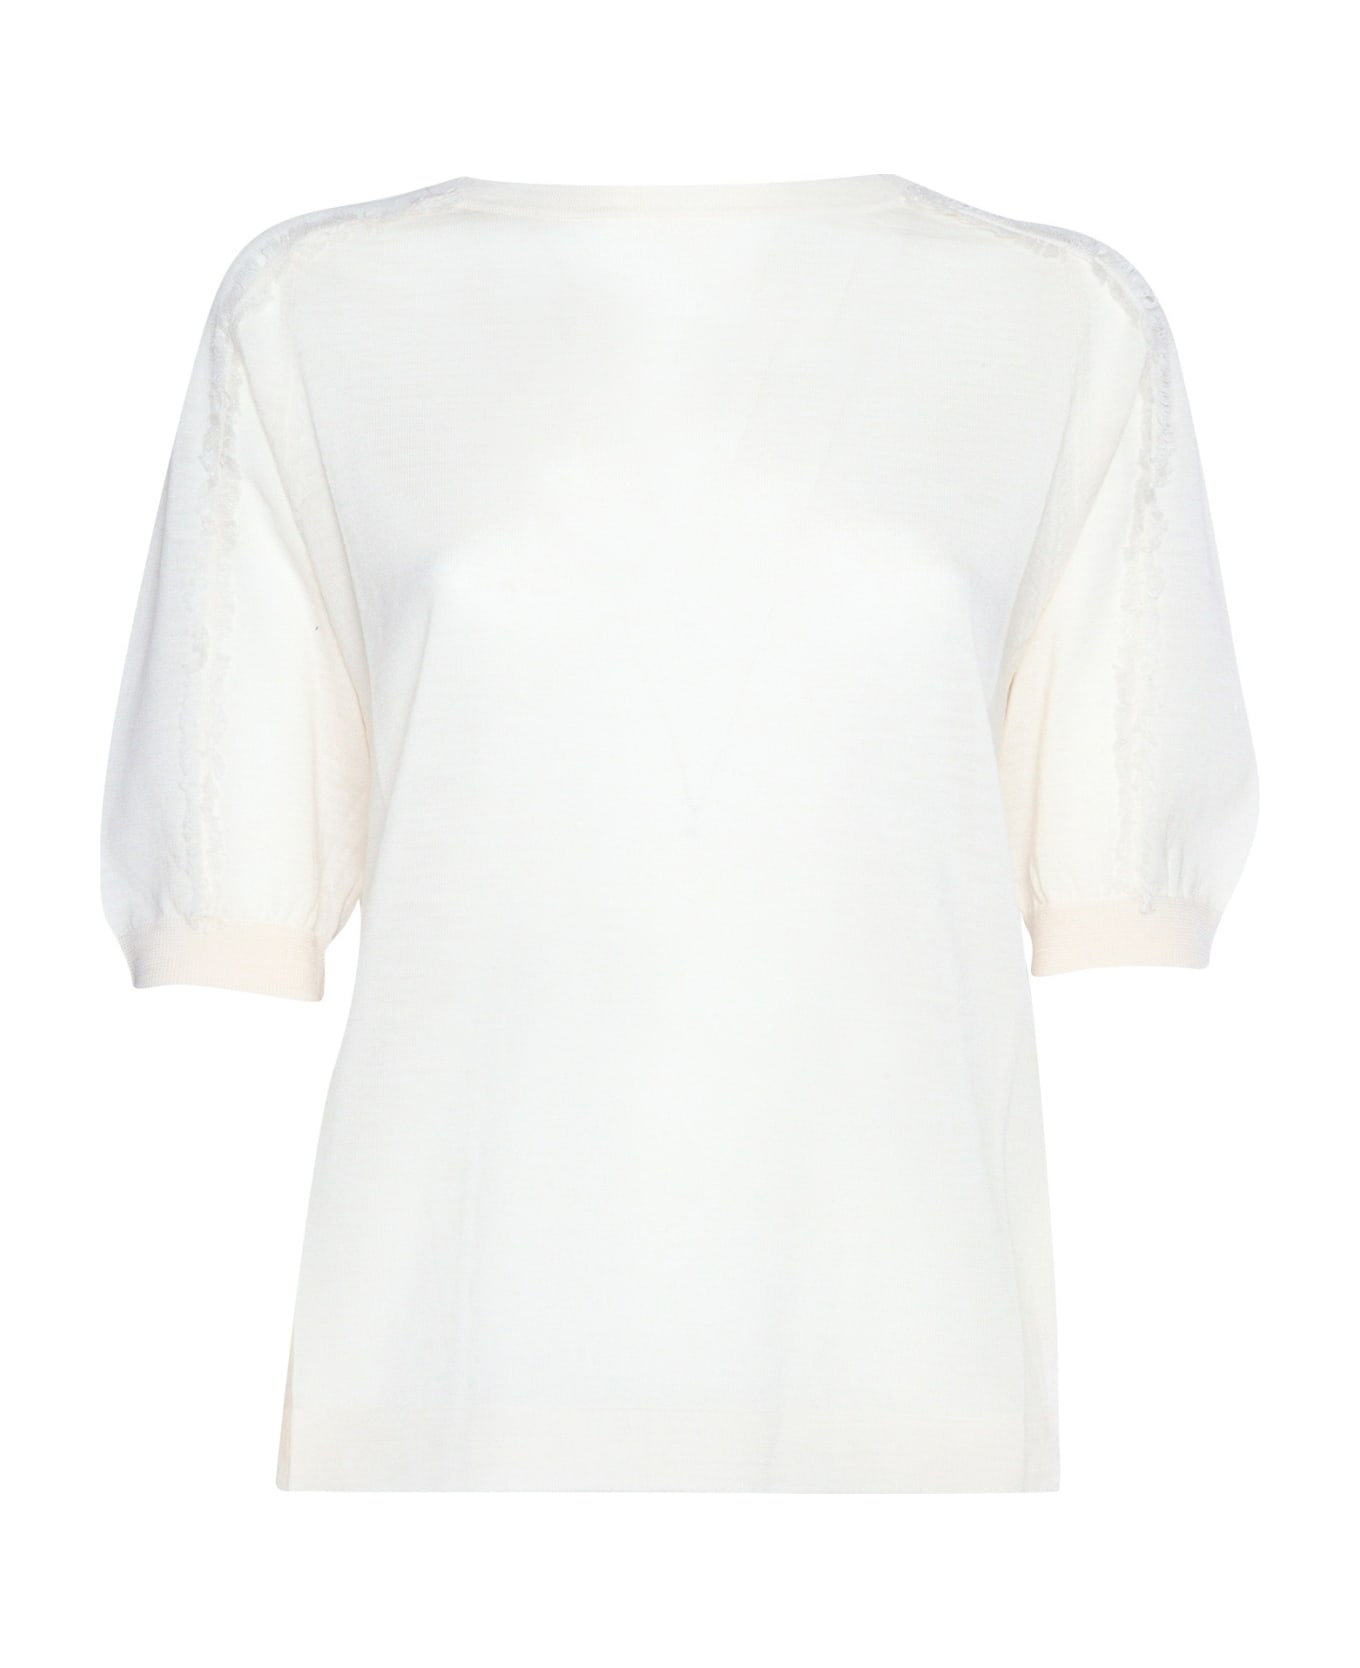 Ballantyne White Short Sleeved Sweater - WHITE ニットウェア